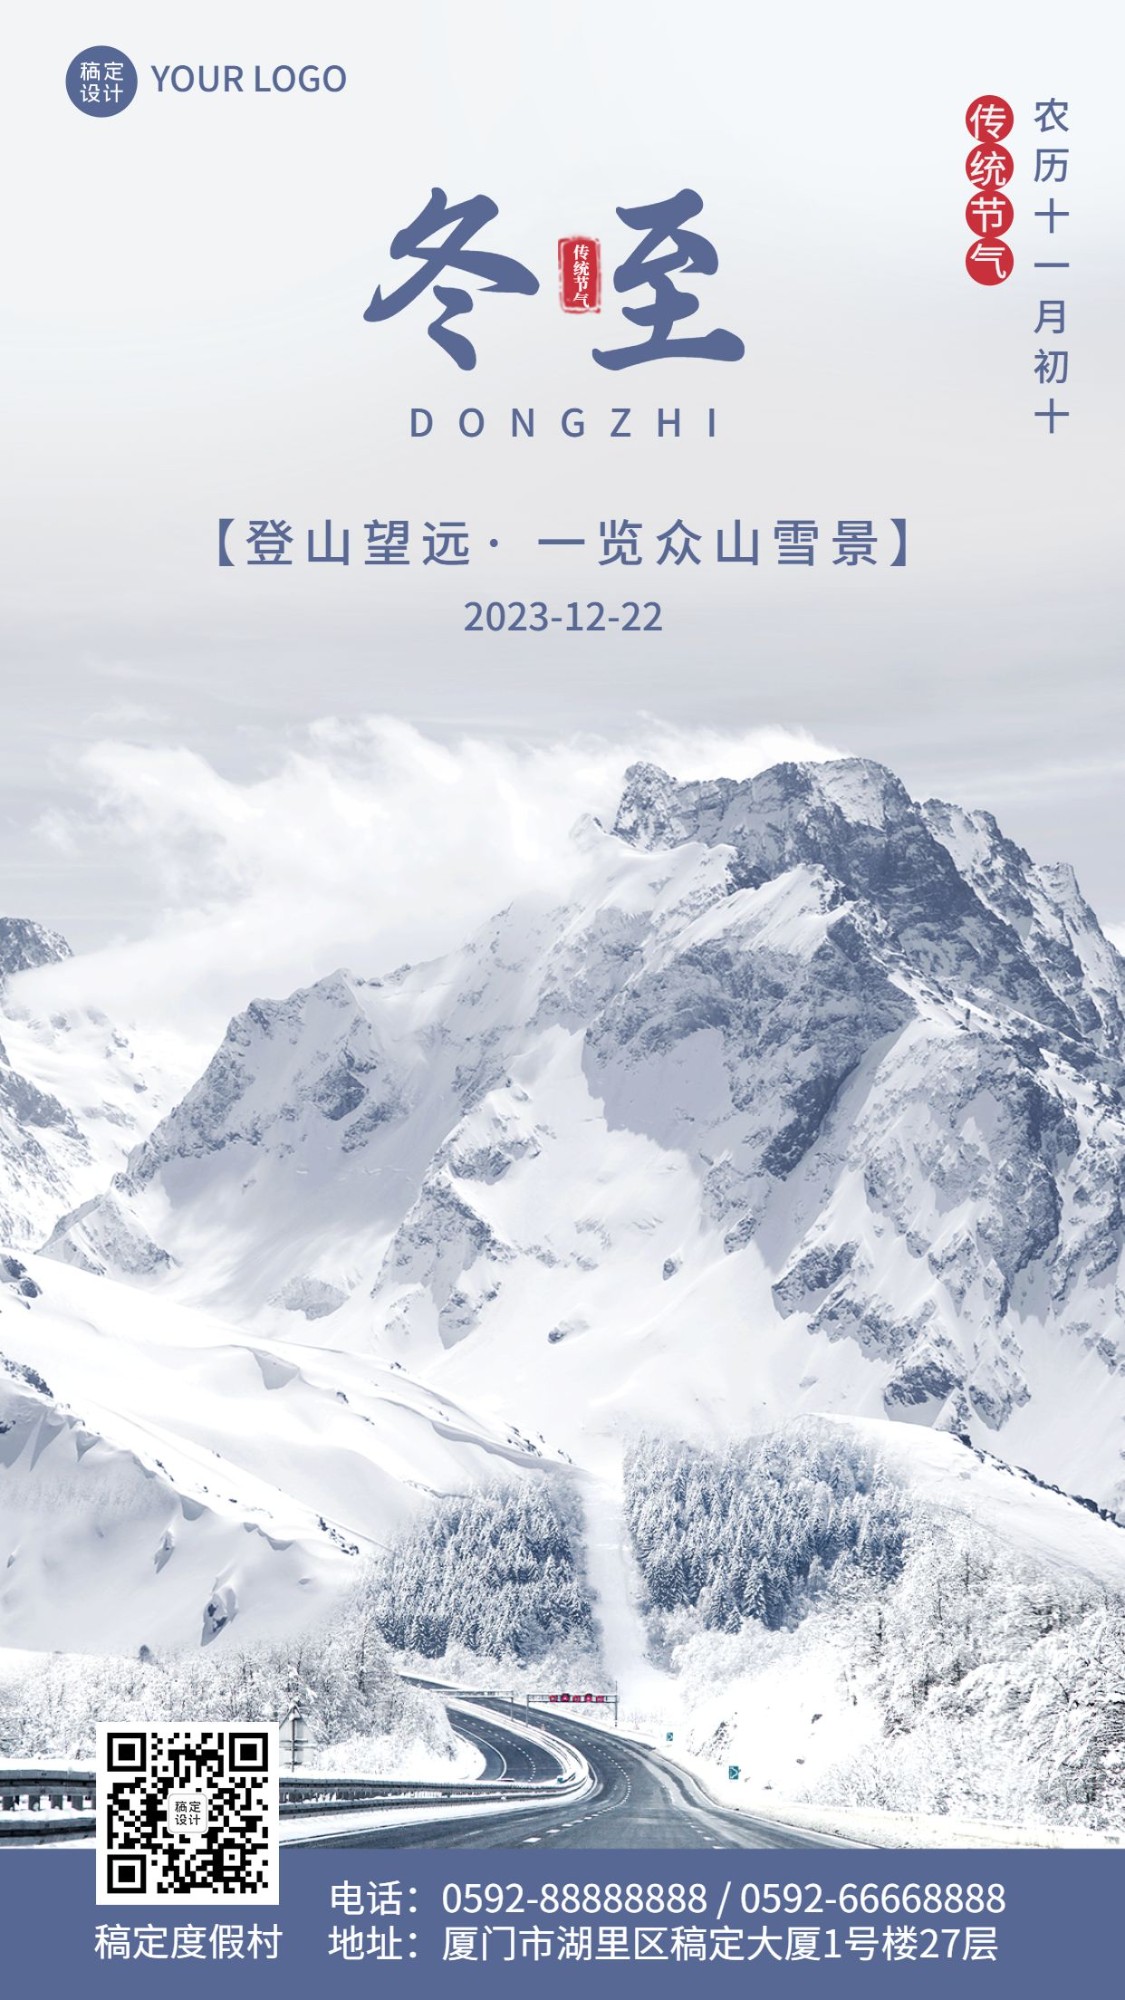 冬至旅游祝福雪山风景手机海报